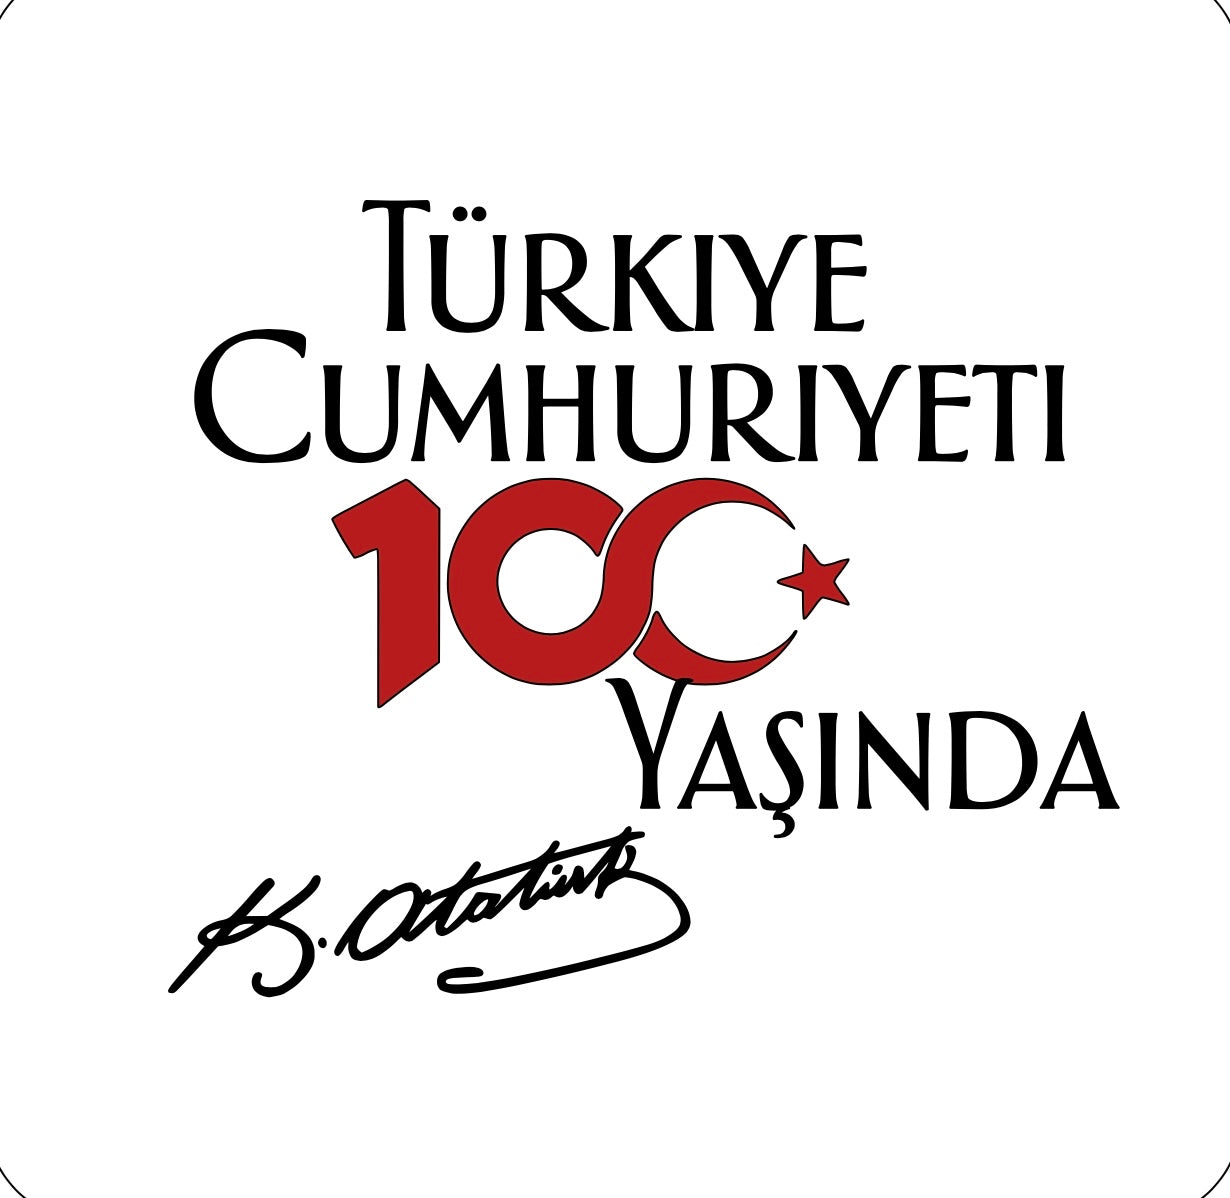 Cumhuriyet 100 yaşında Atatürk signature T-shirt - Adult